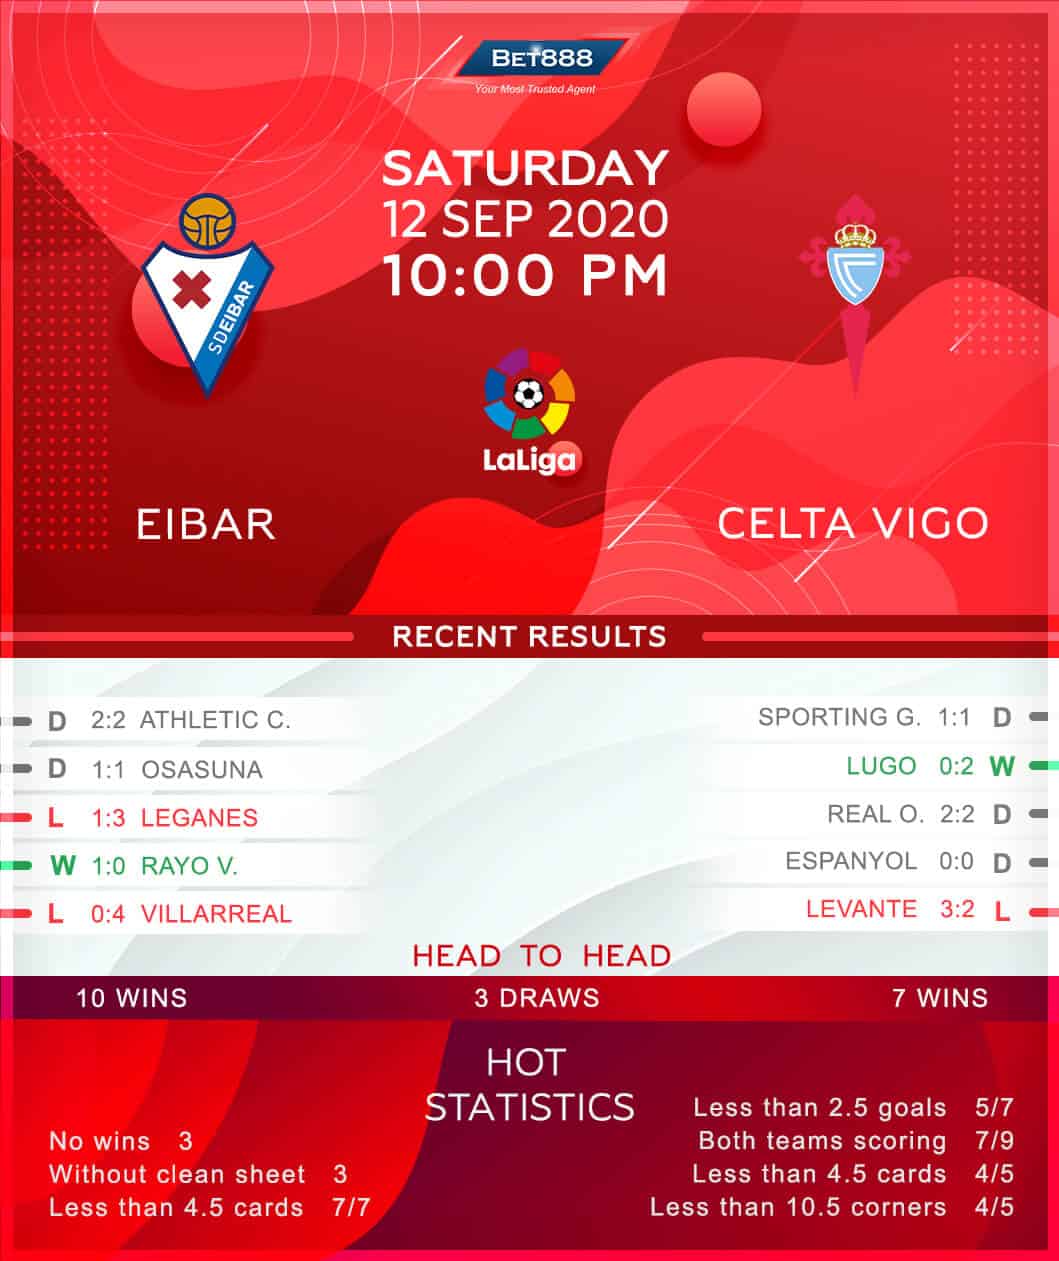 Eibar vs Celta Vigo 12/09/20